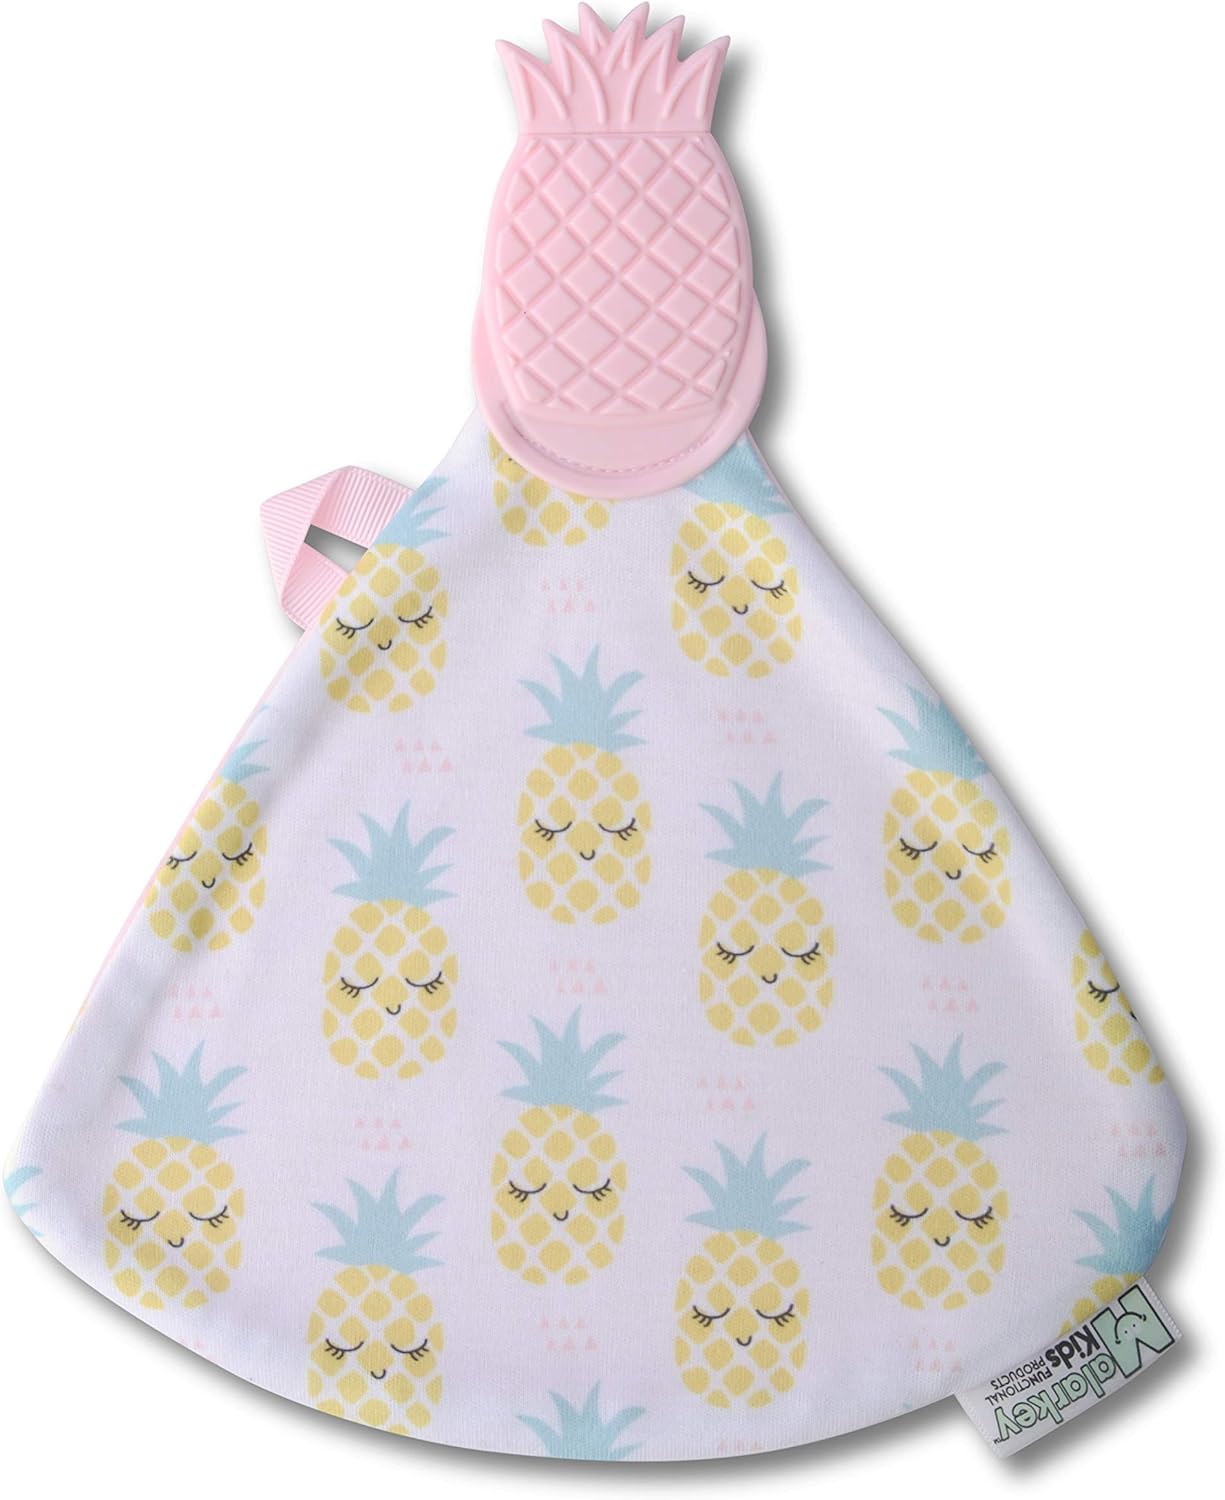 Malarkey Kids Munch-It Blanket - Pretty In Pineapple